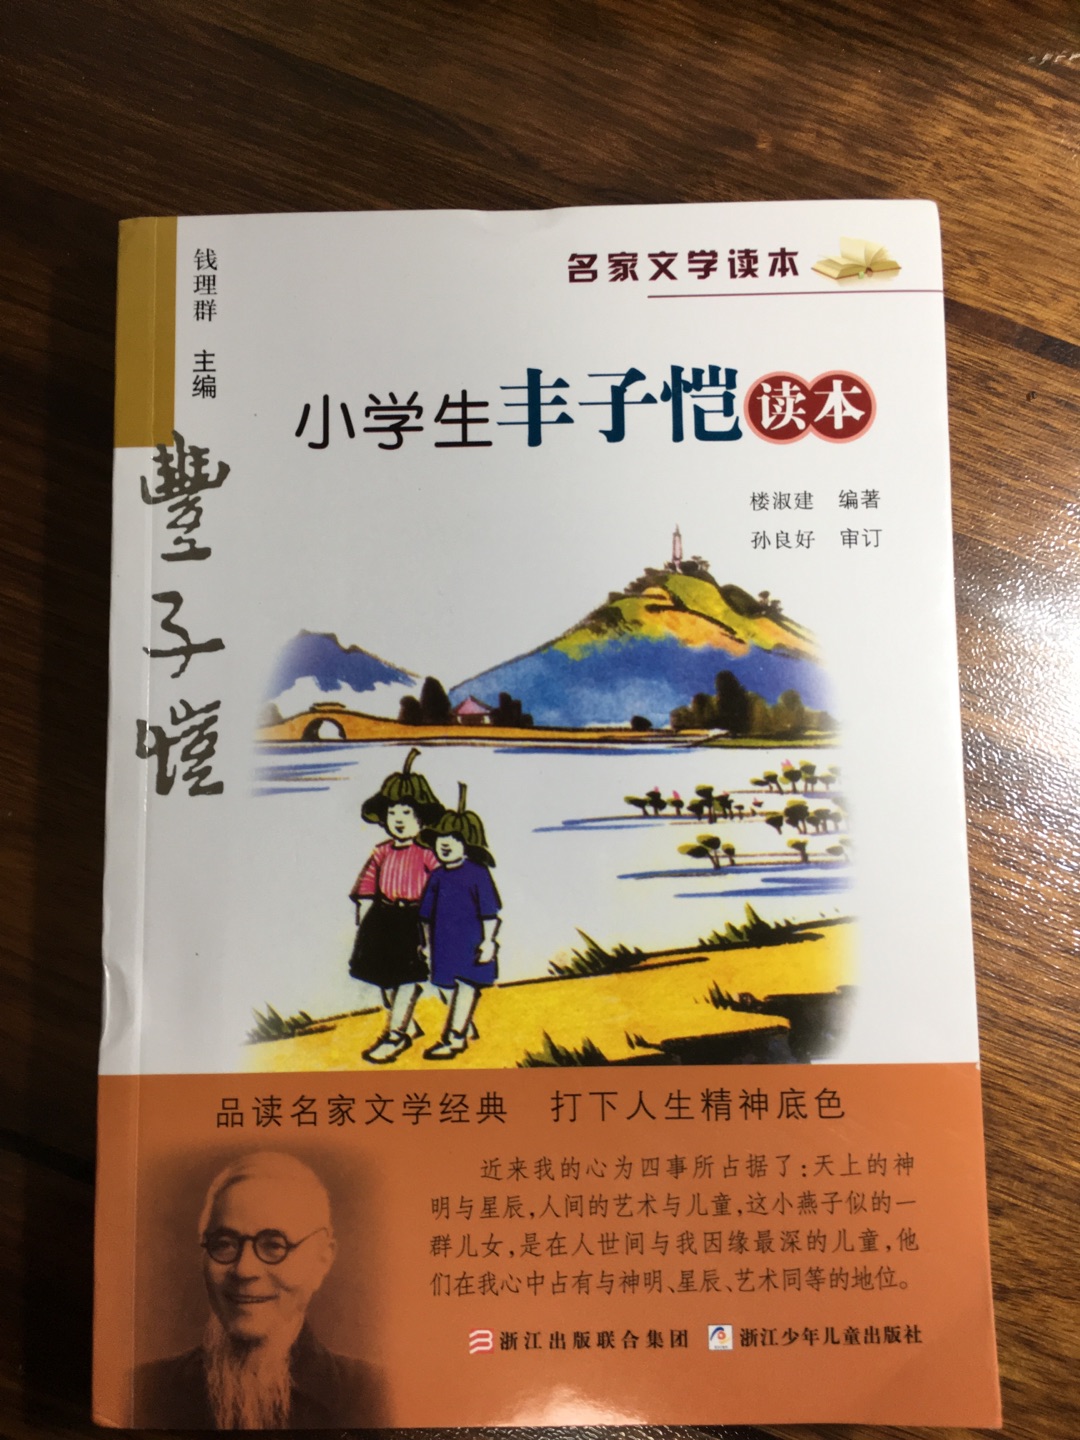 非常好，是四年级语文老师推荐的书。